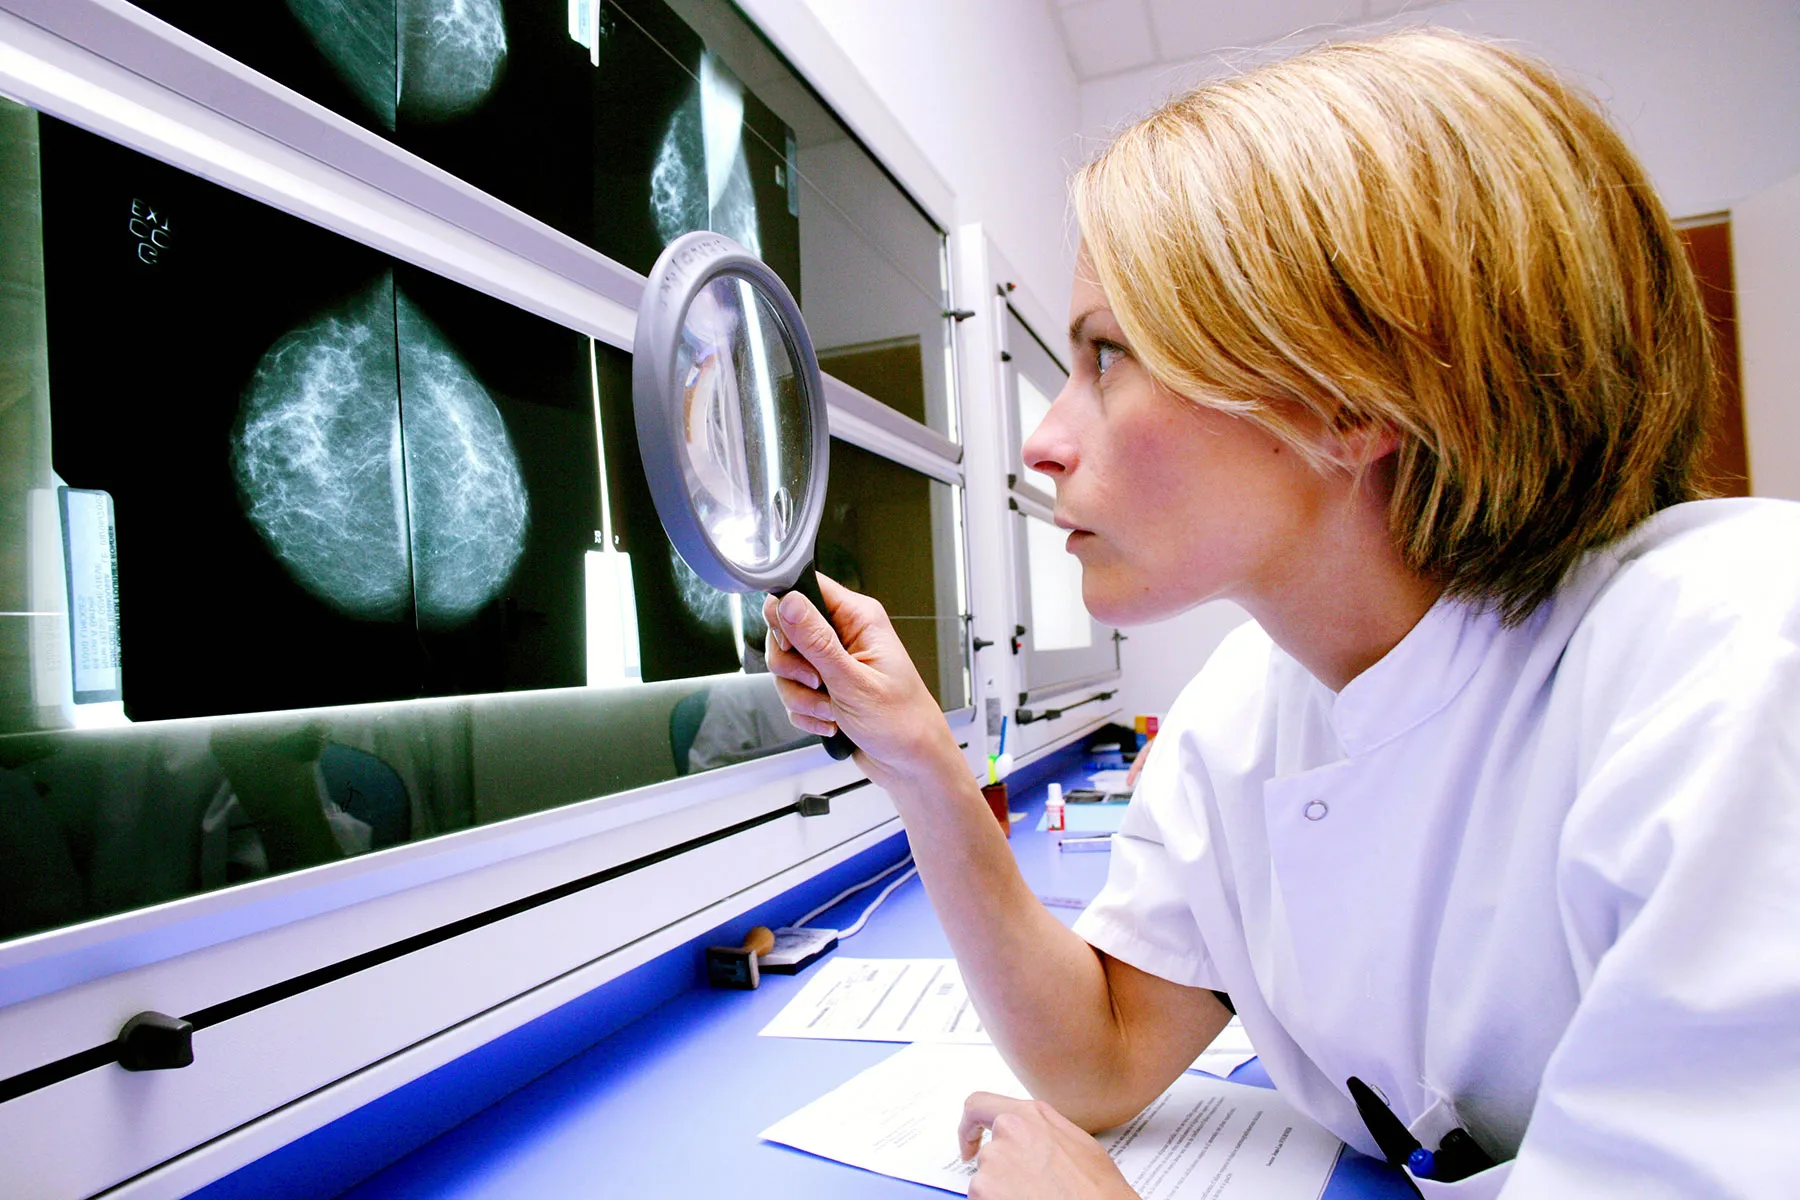 Despite Scares from COVID Vaccine, Mammograms Still Vital